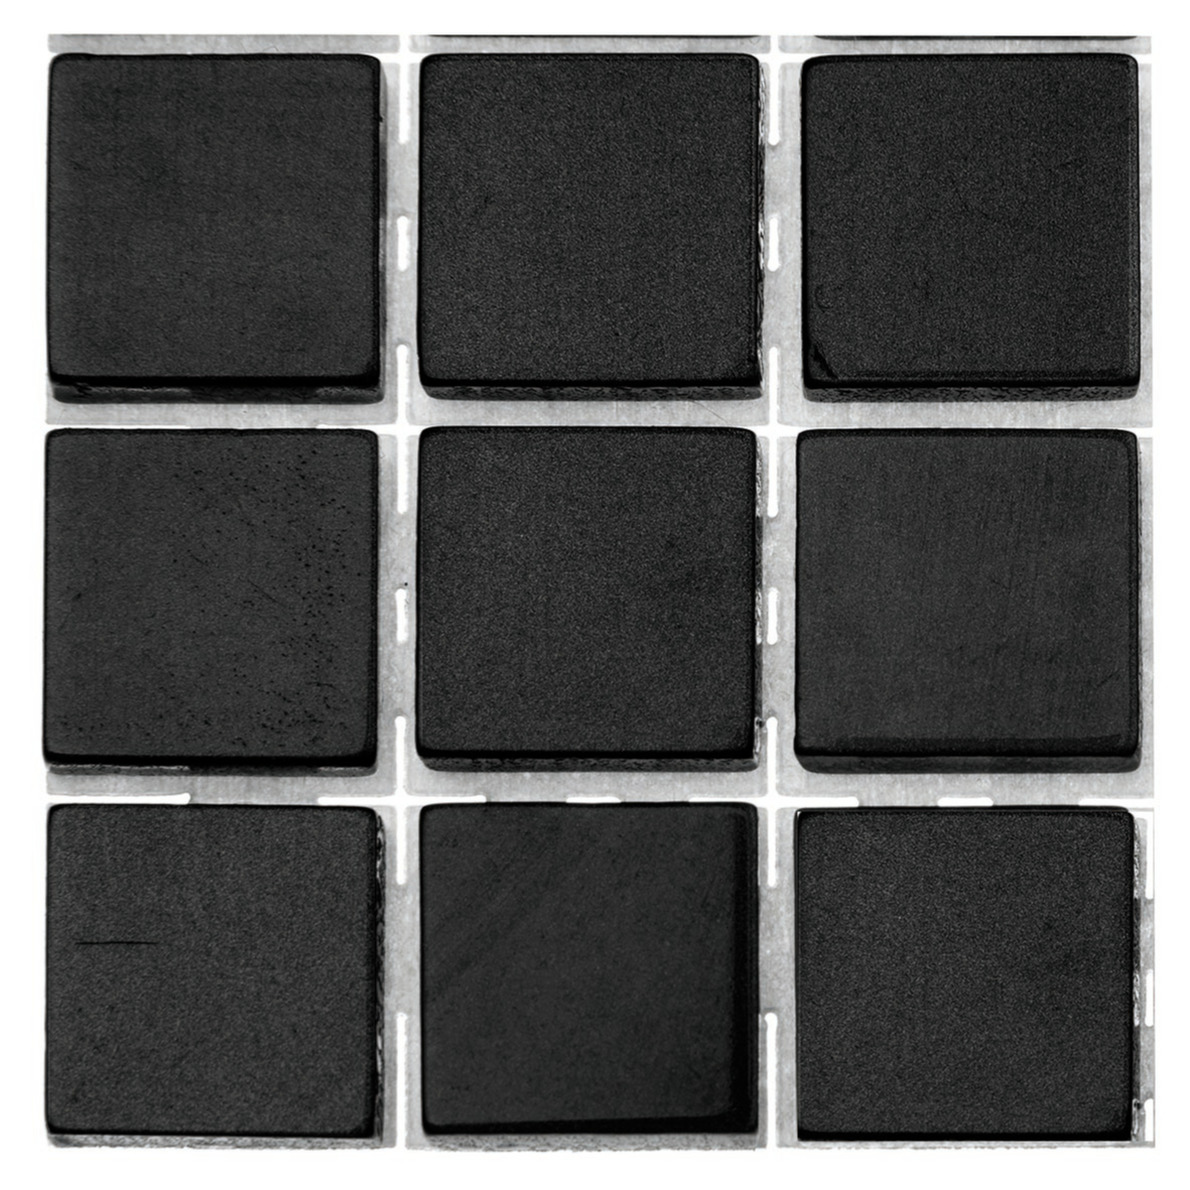 630x stuks mozaieken maken steentjes/tegels kleur zwart met formaat 10 x 10 x 2 mm